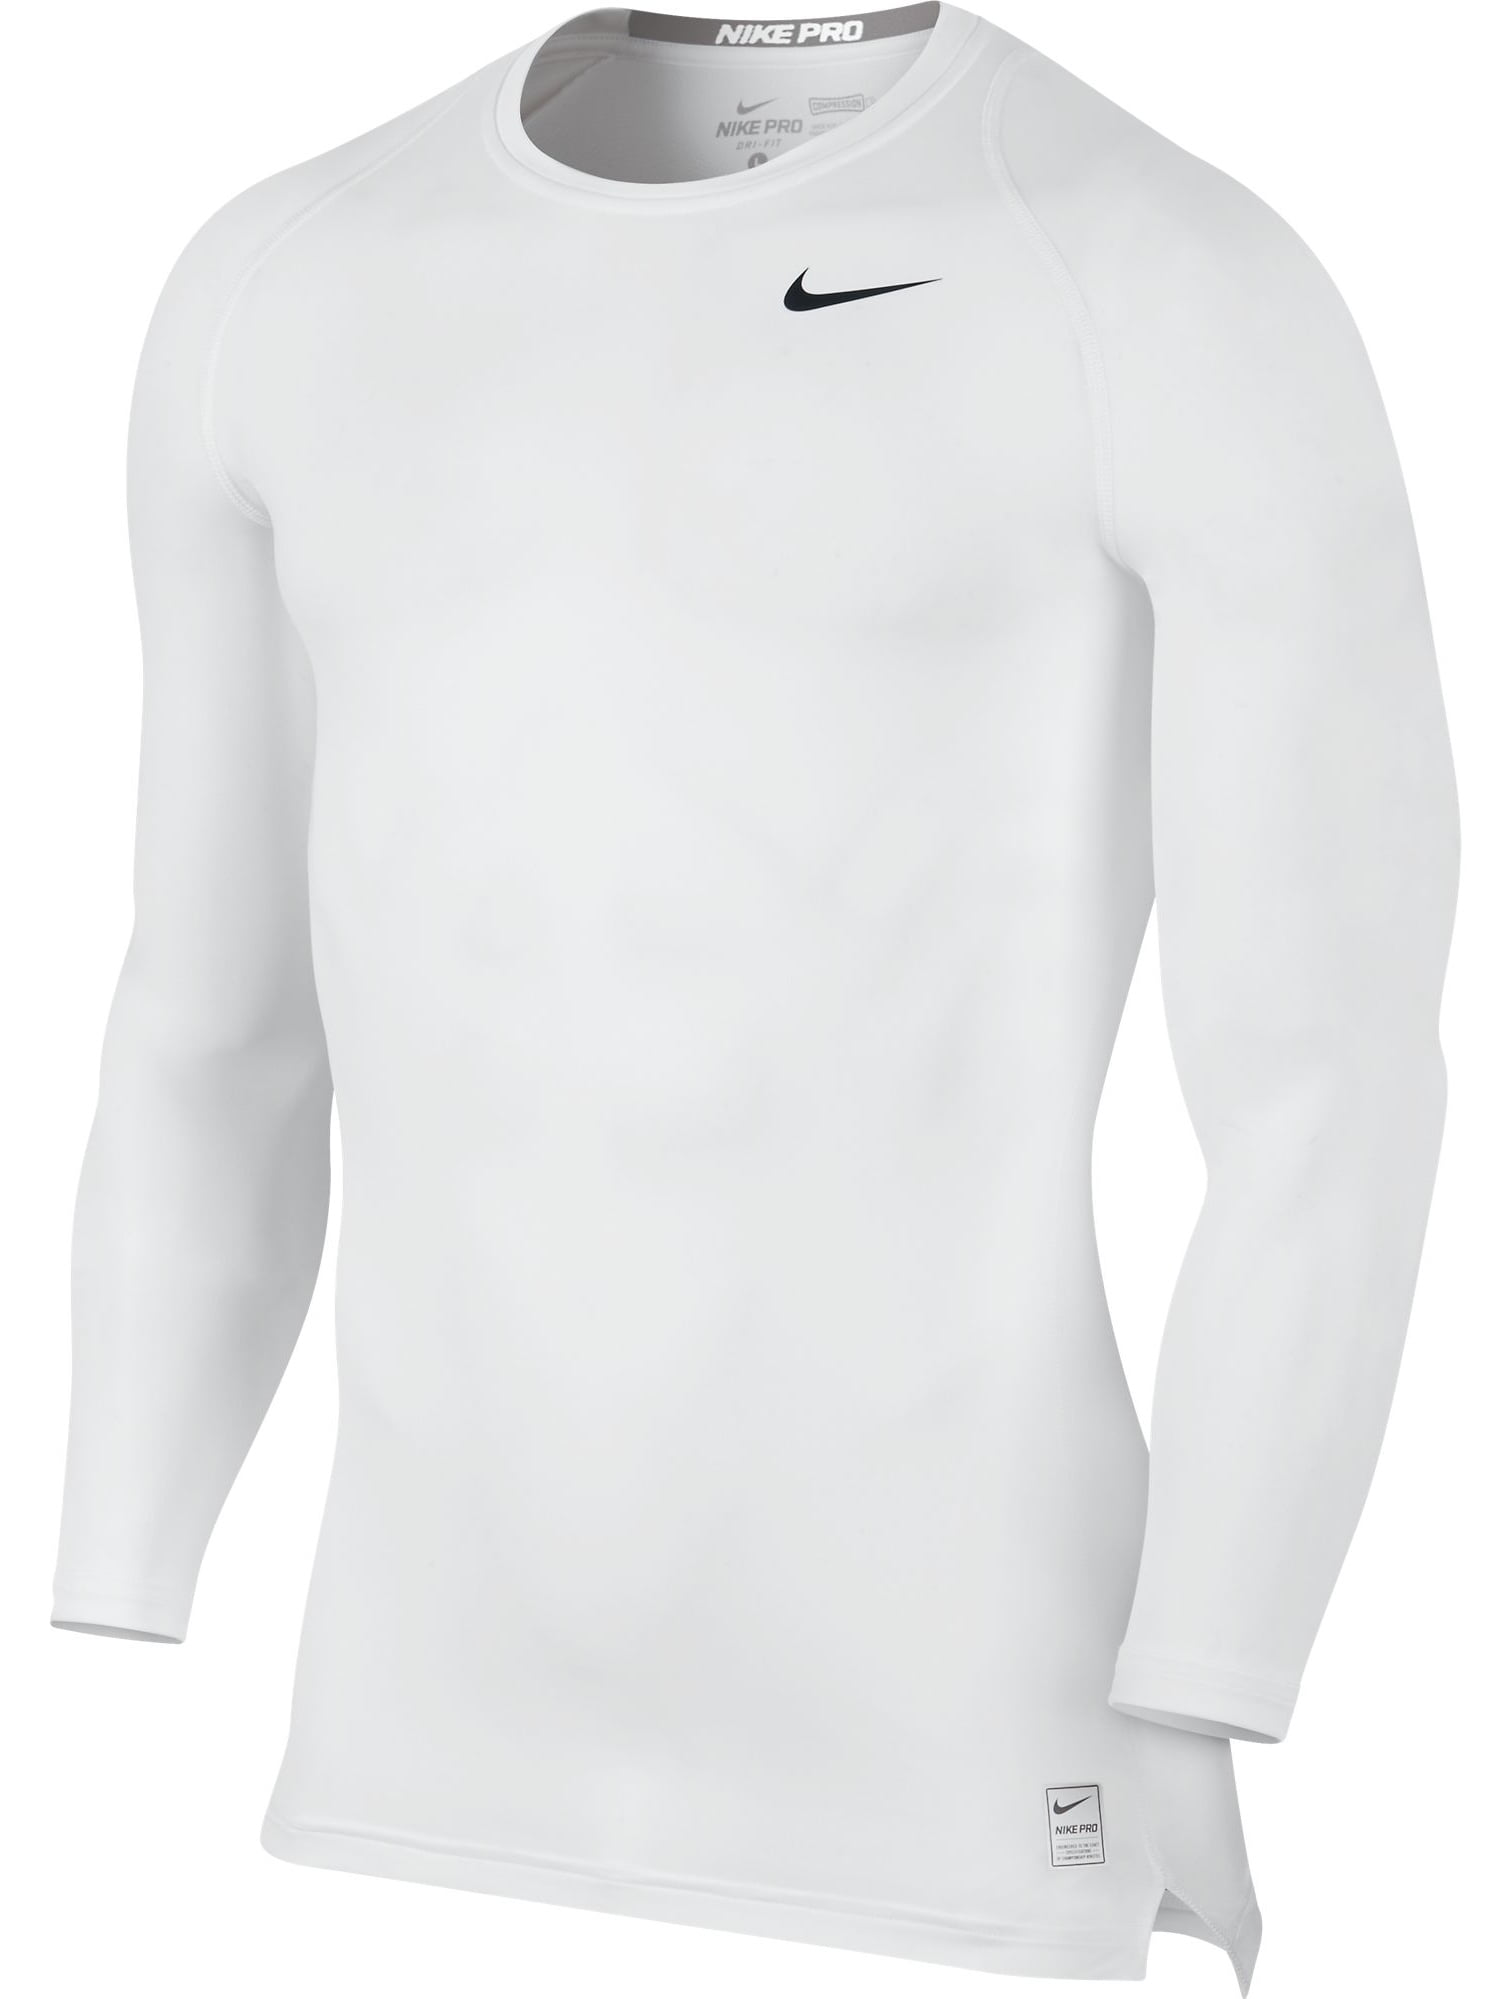 Nike Cool Longsleeve Training Men's White/Black 703088-100